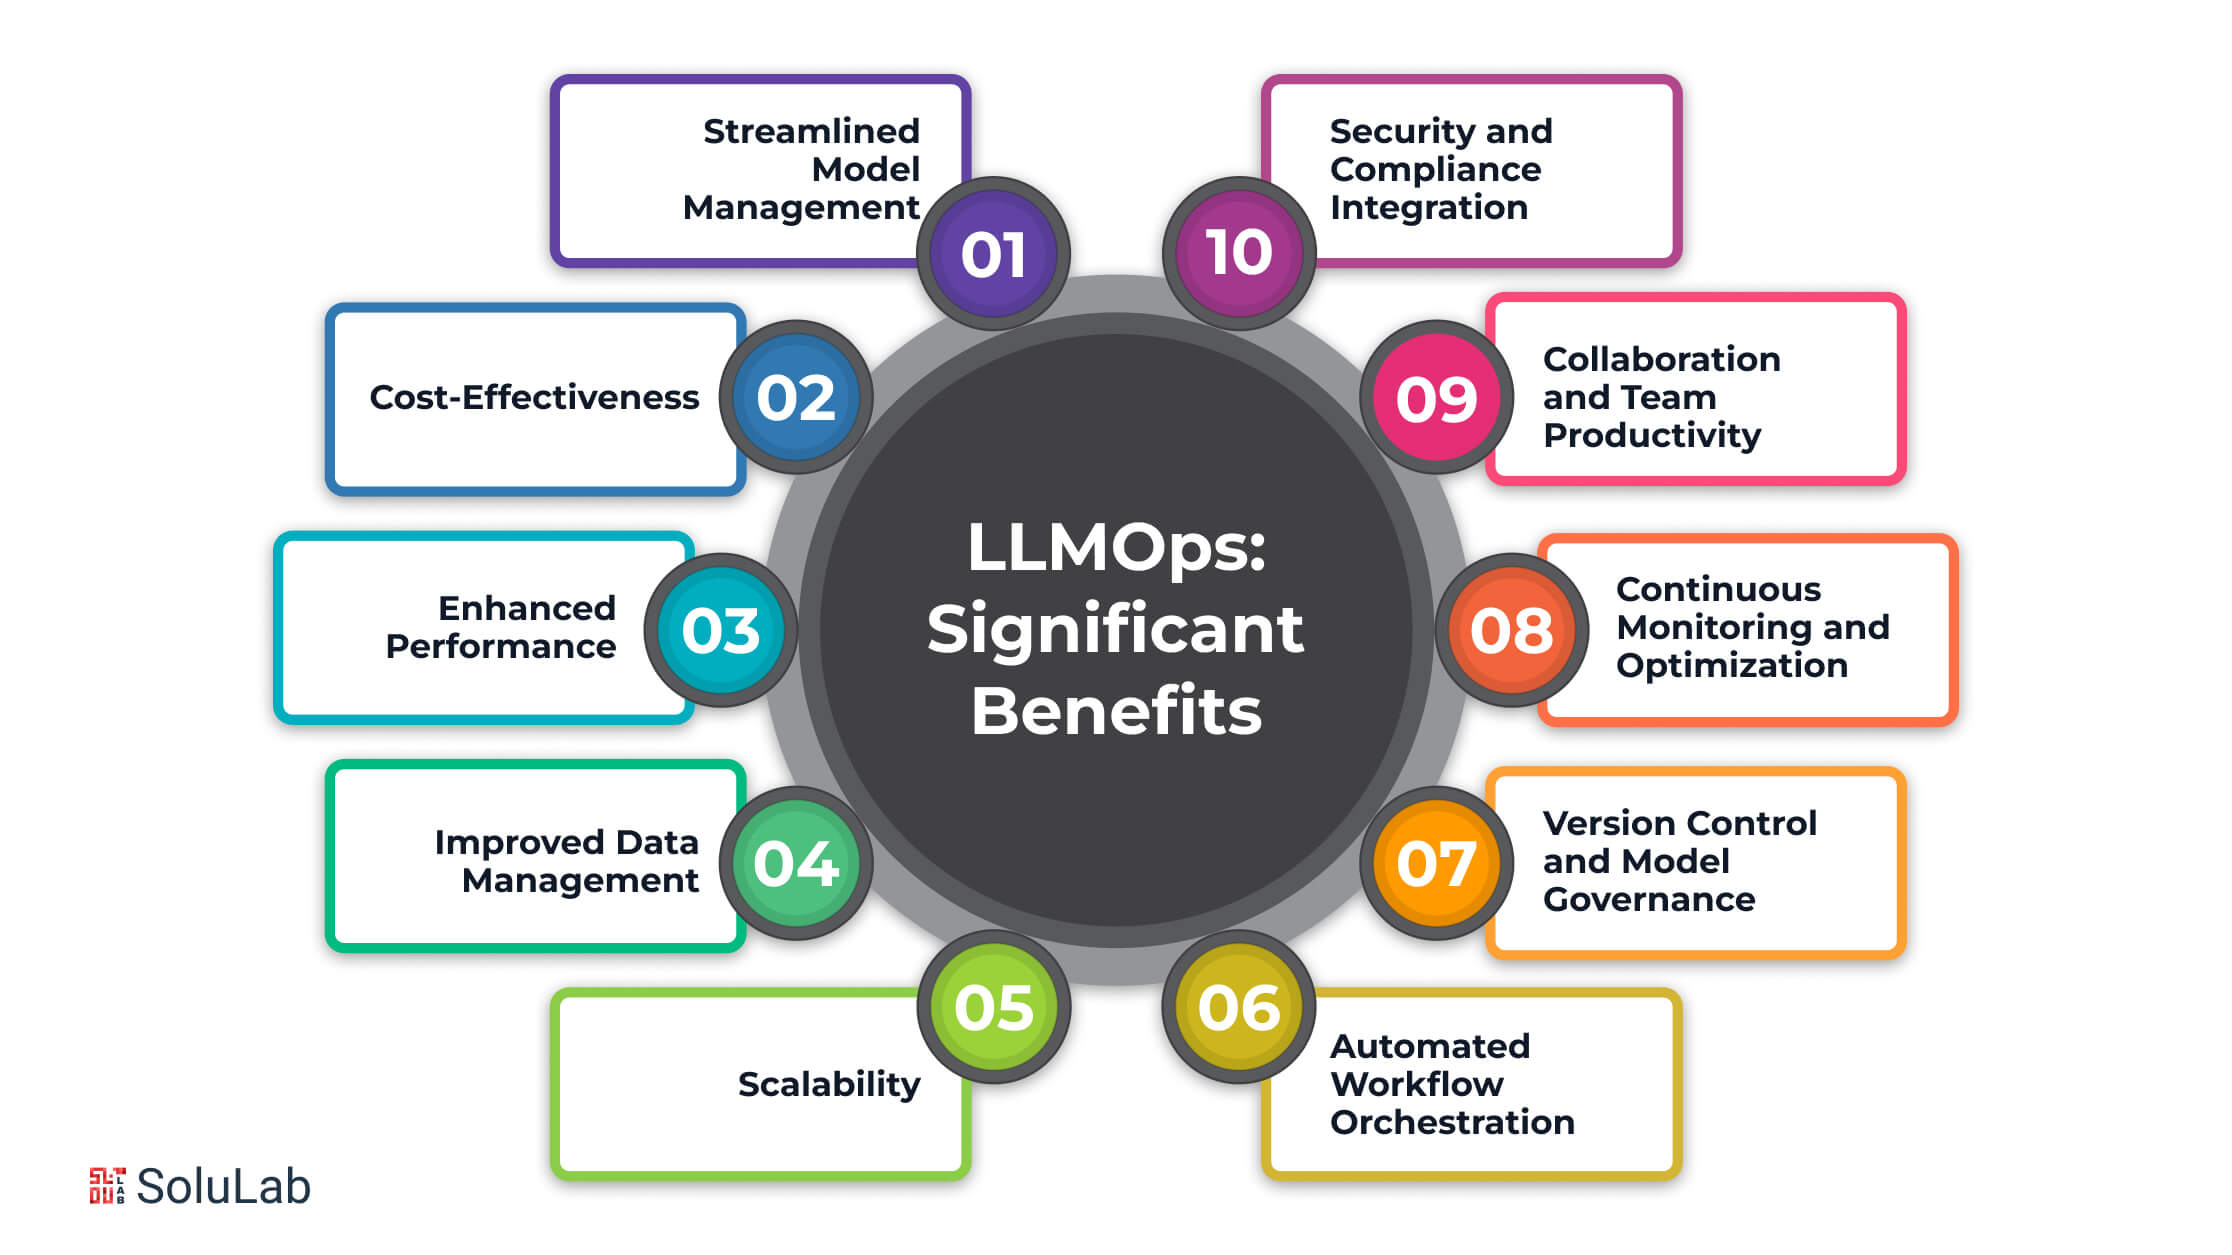 LLMOps: Significant Benefits 